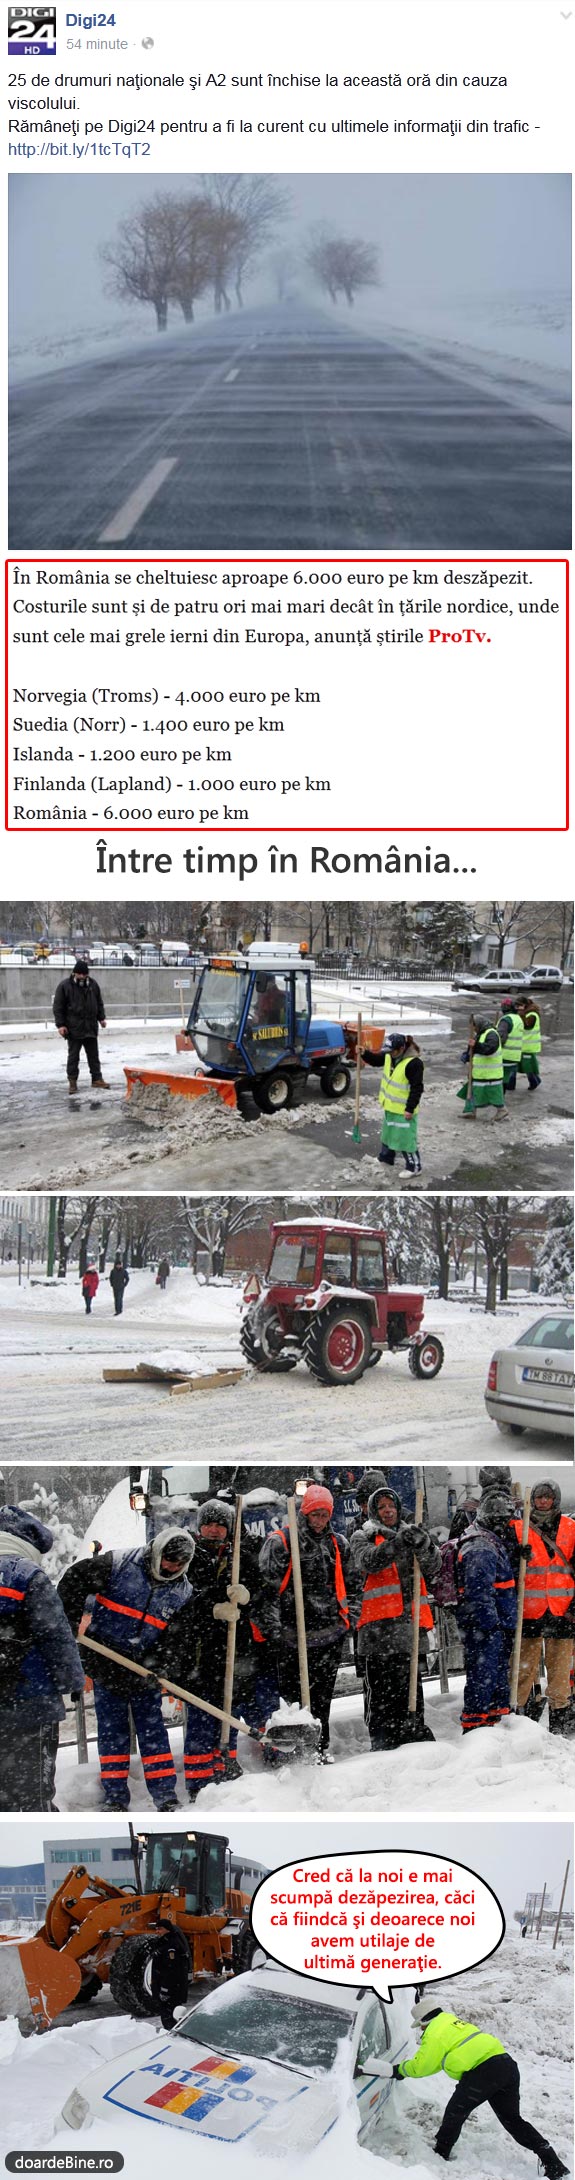 Dezăpezirea în România